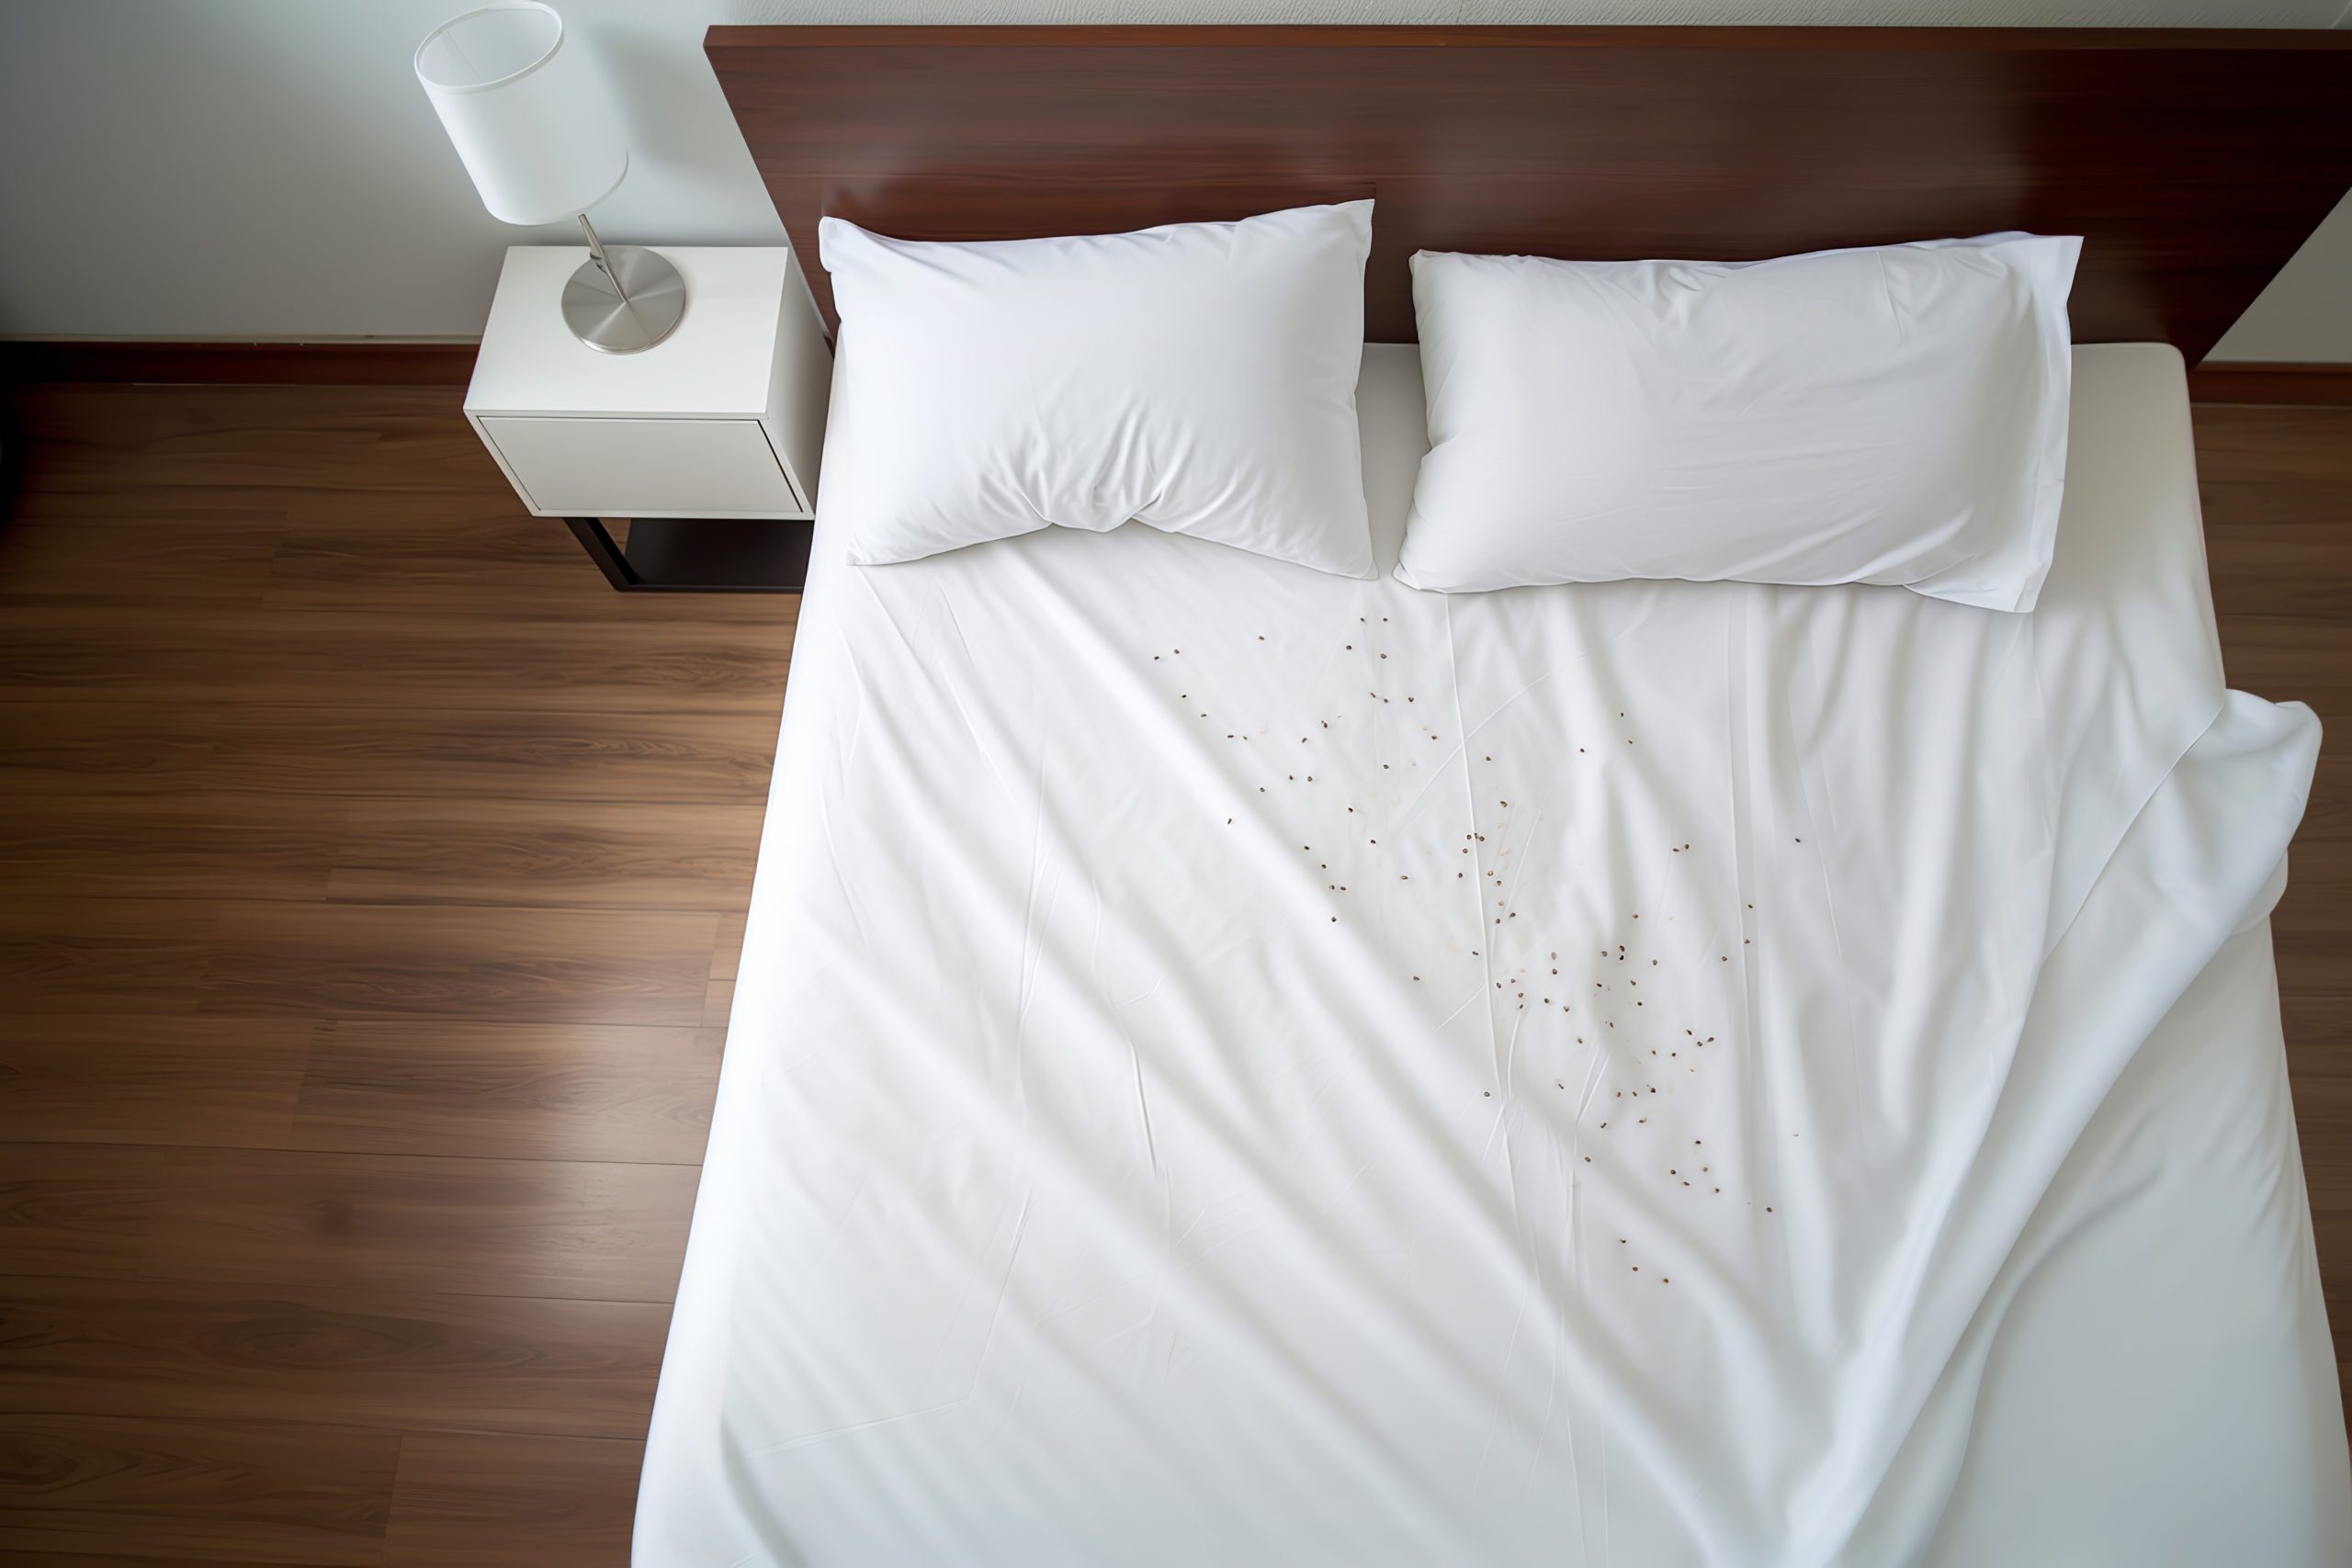 Les punaises de lit dans les hôtels, un fléau à éradiquer